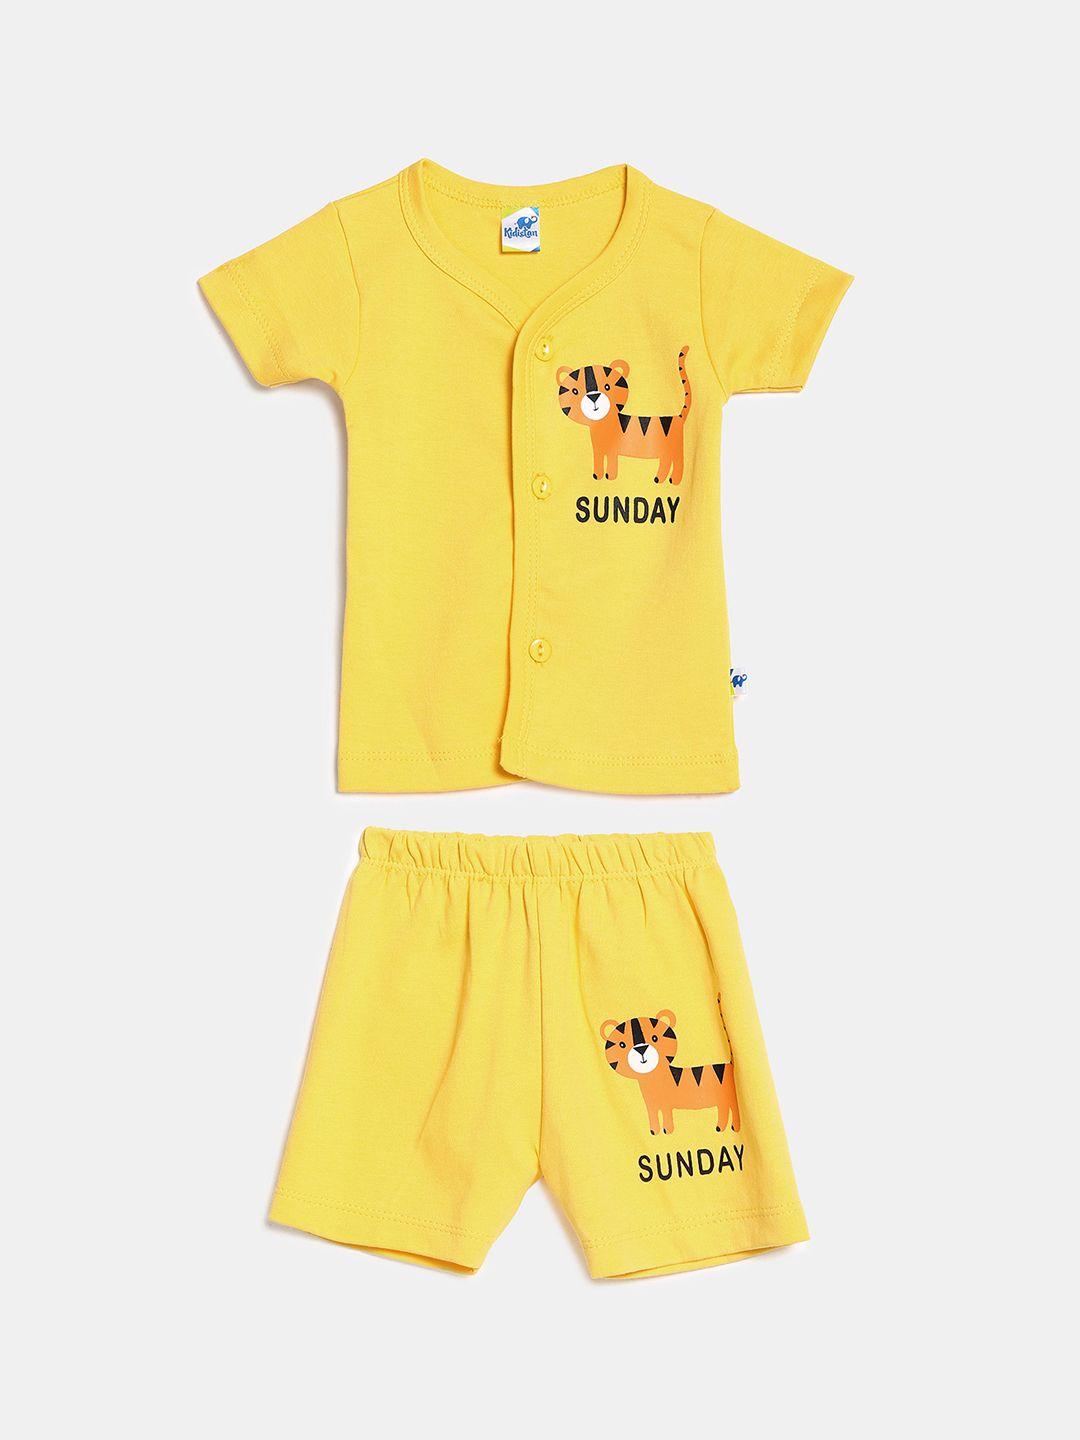 v-mart-unisex-kids-yellow-clothing-set